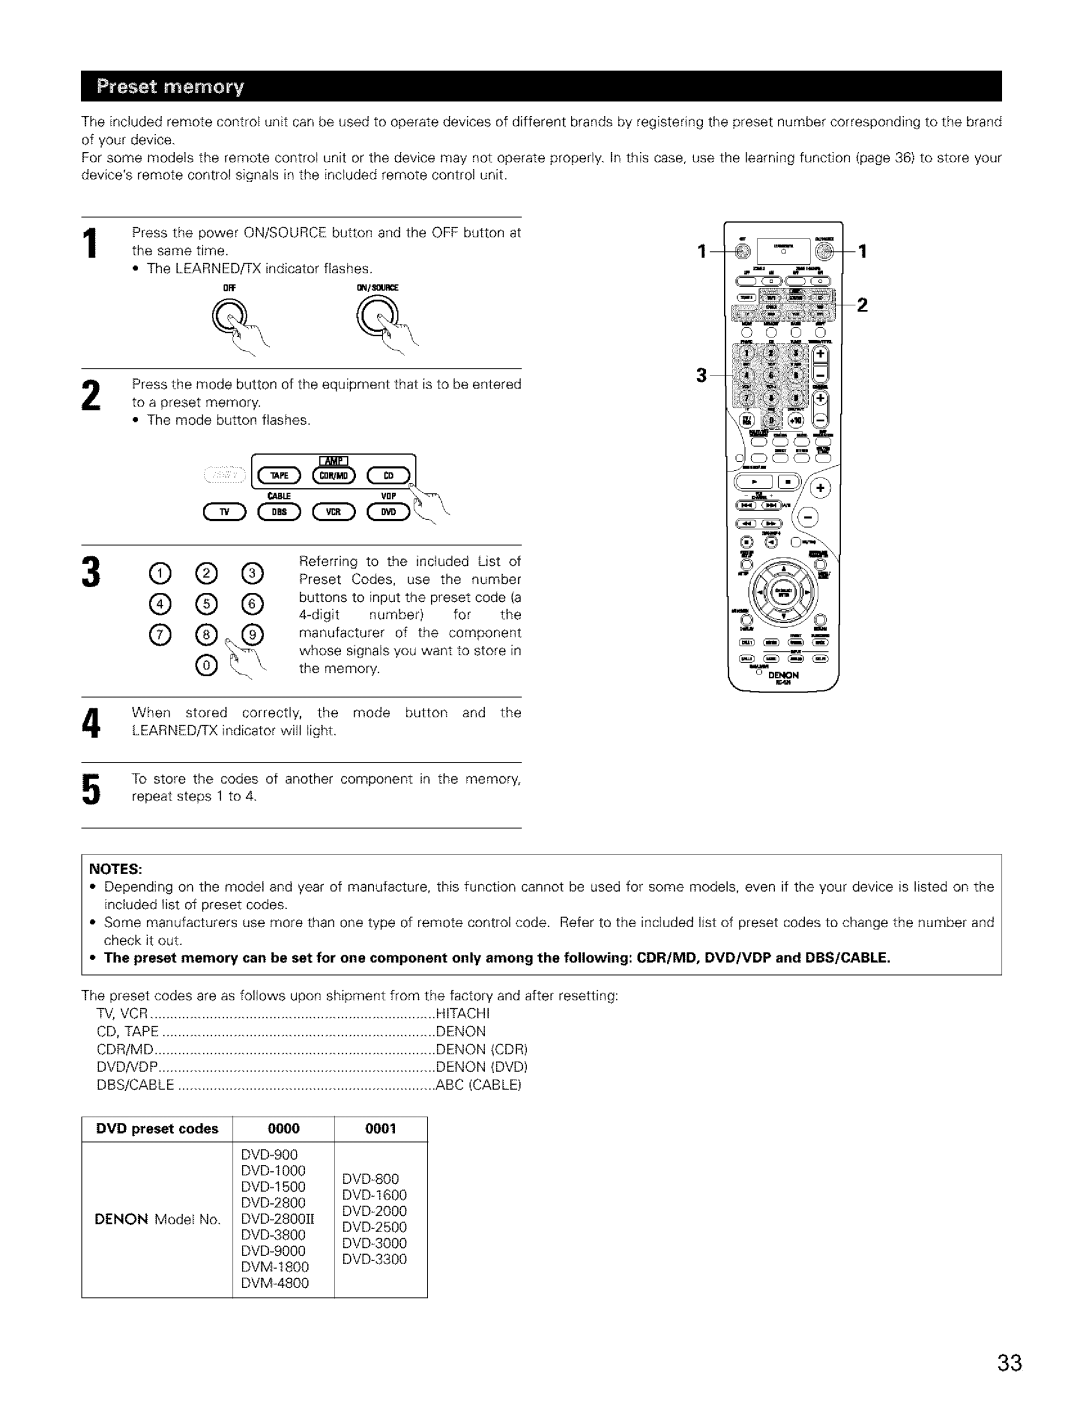 Denon AVR-2803/983 manual C2D 3E CAD, Notes, DVD preset codes, 0000, 0001 